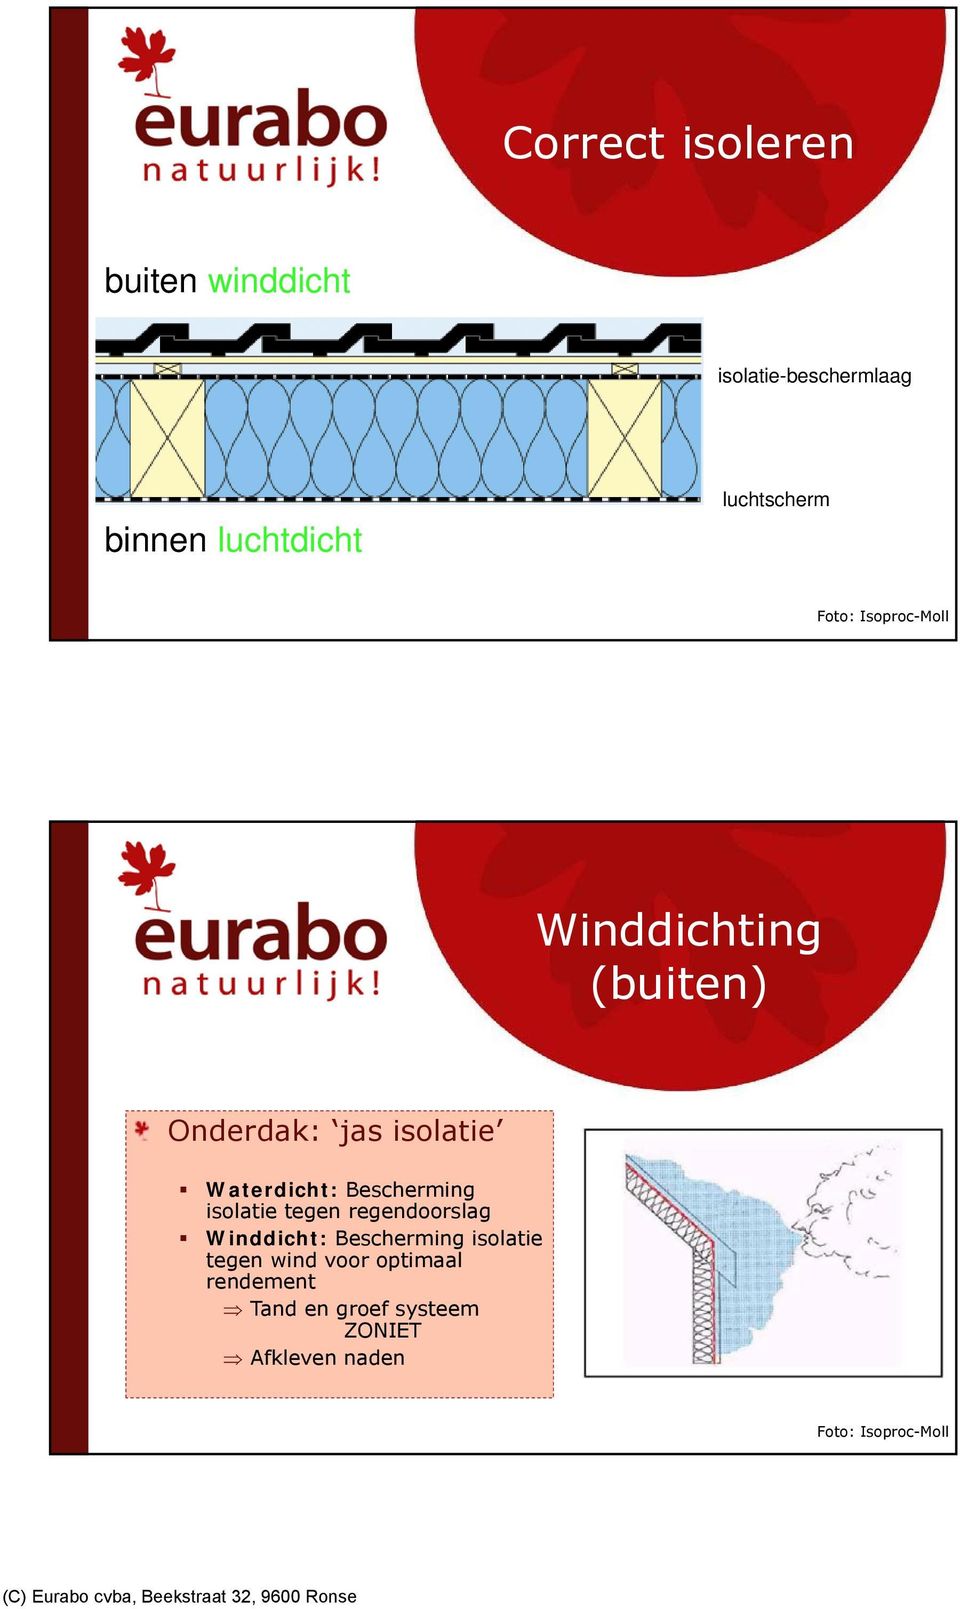 Bescherming isolatie tegen regendoorslag Winddicht: Bescherming isolatie tegen wind voor optimaal rendement Tand en groef